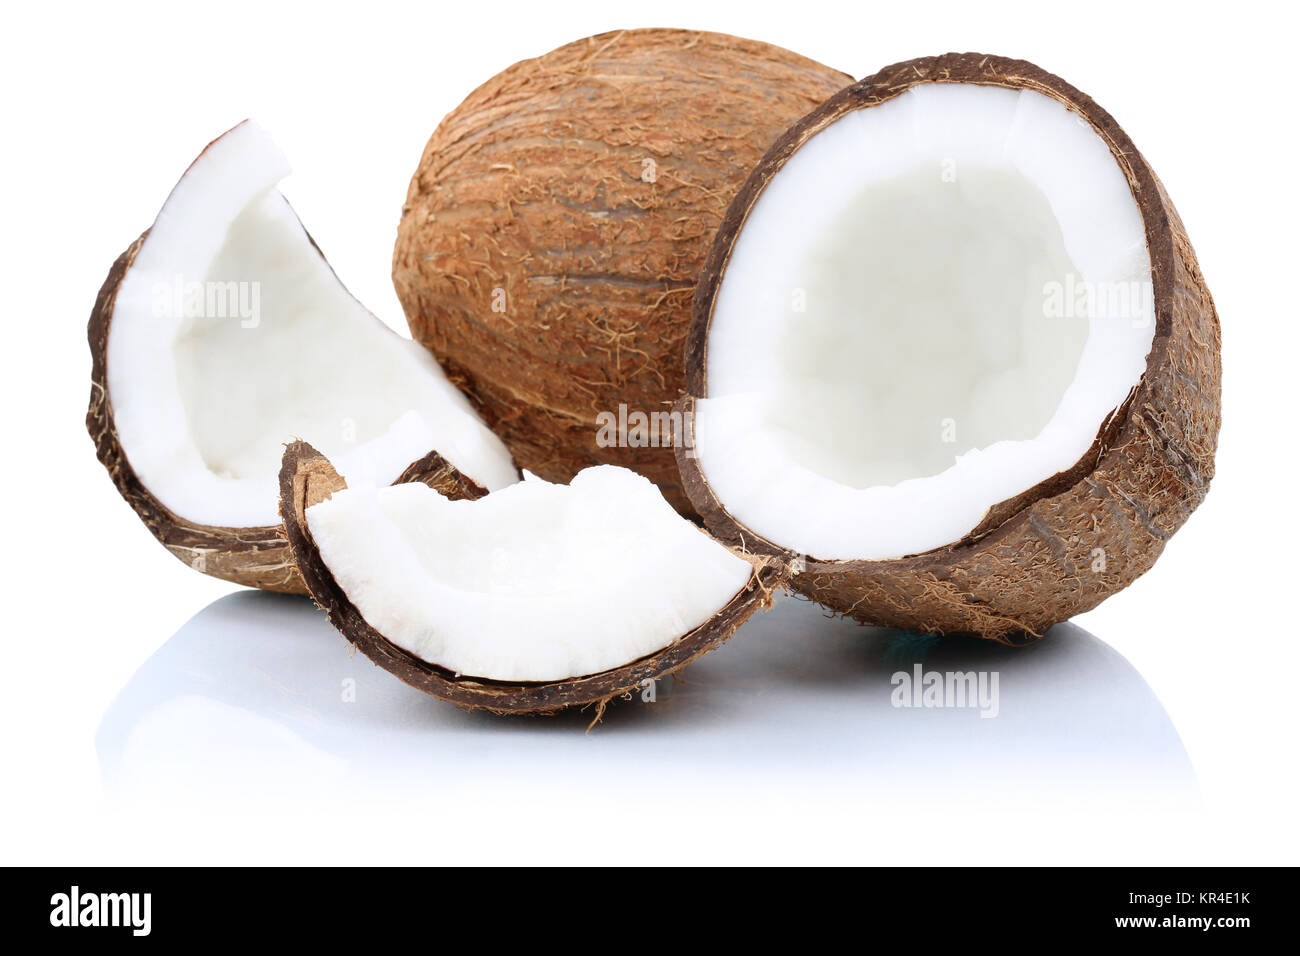 Kokosnuss Kokosnüsse Frucht geschnitten Stücke Früchte Freisteller freigestellt isoliert vor einem weissen Hintergrund Stock Photo